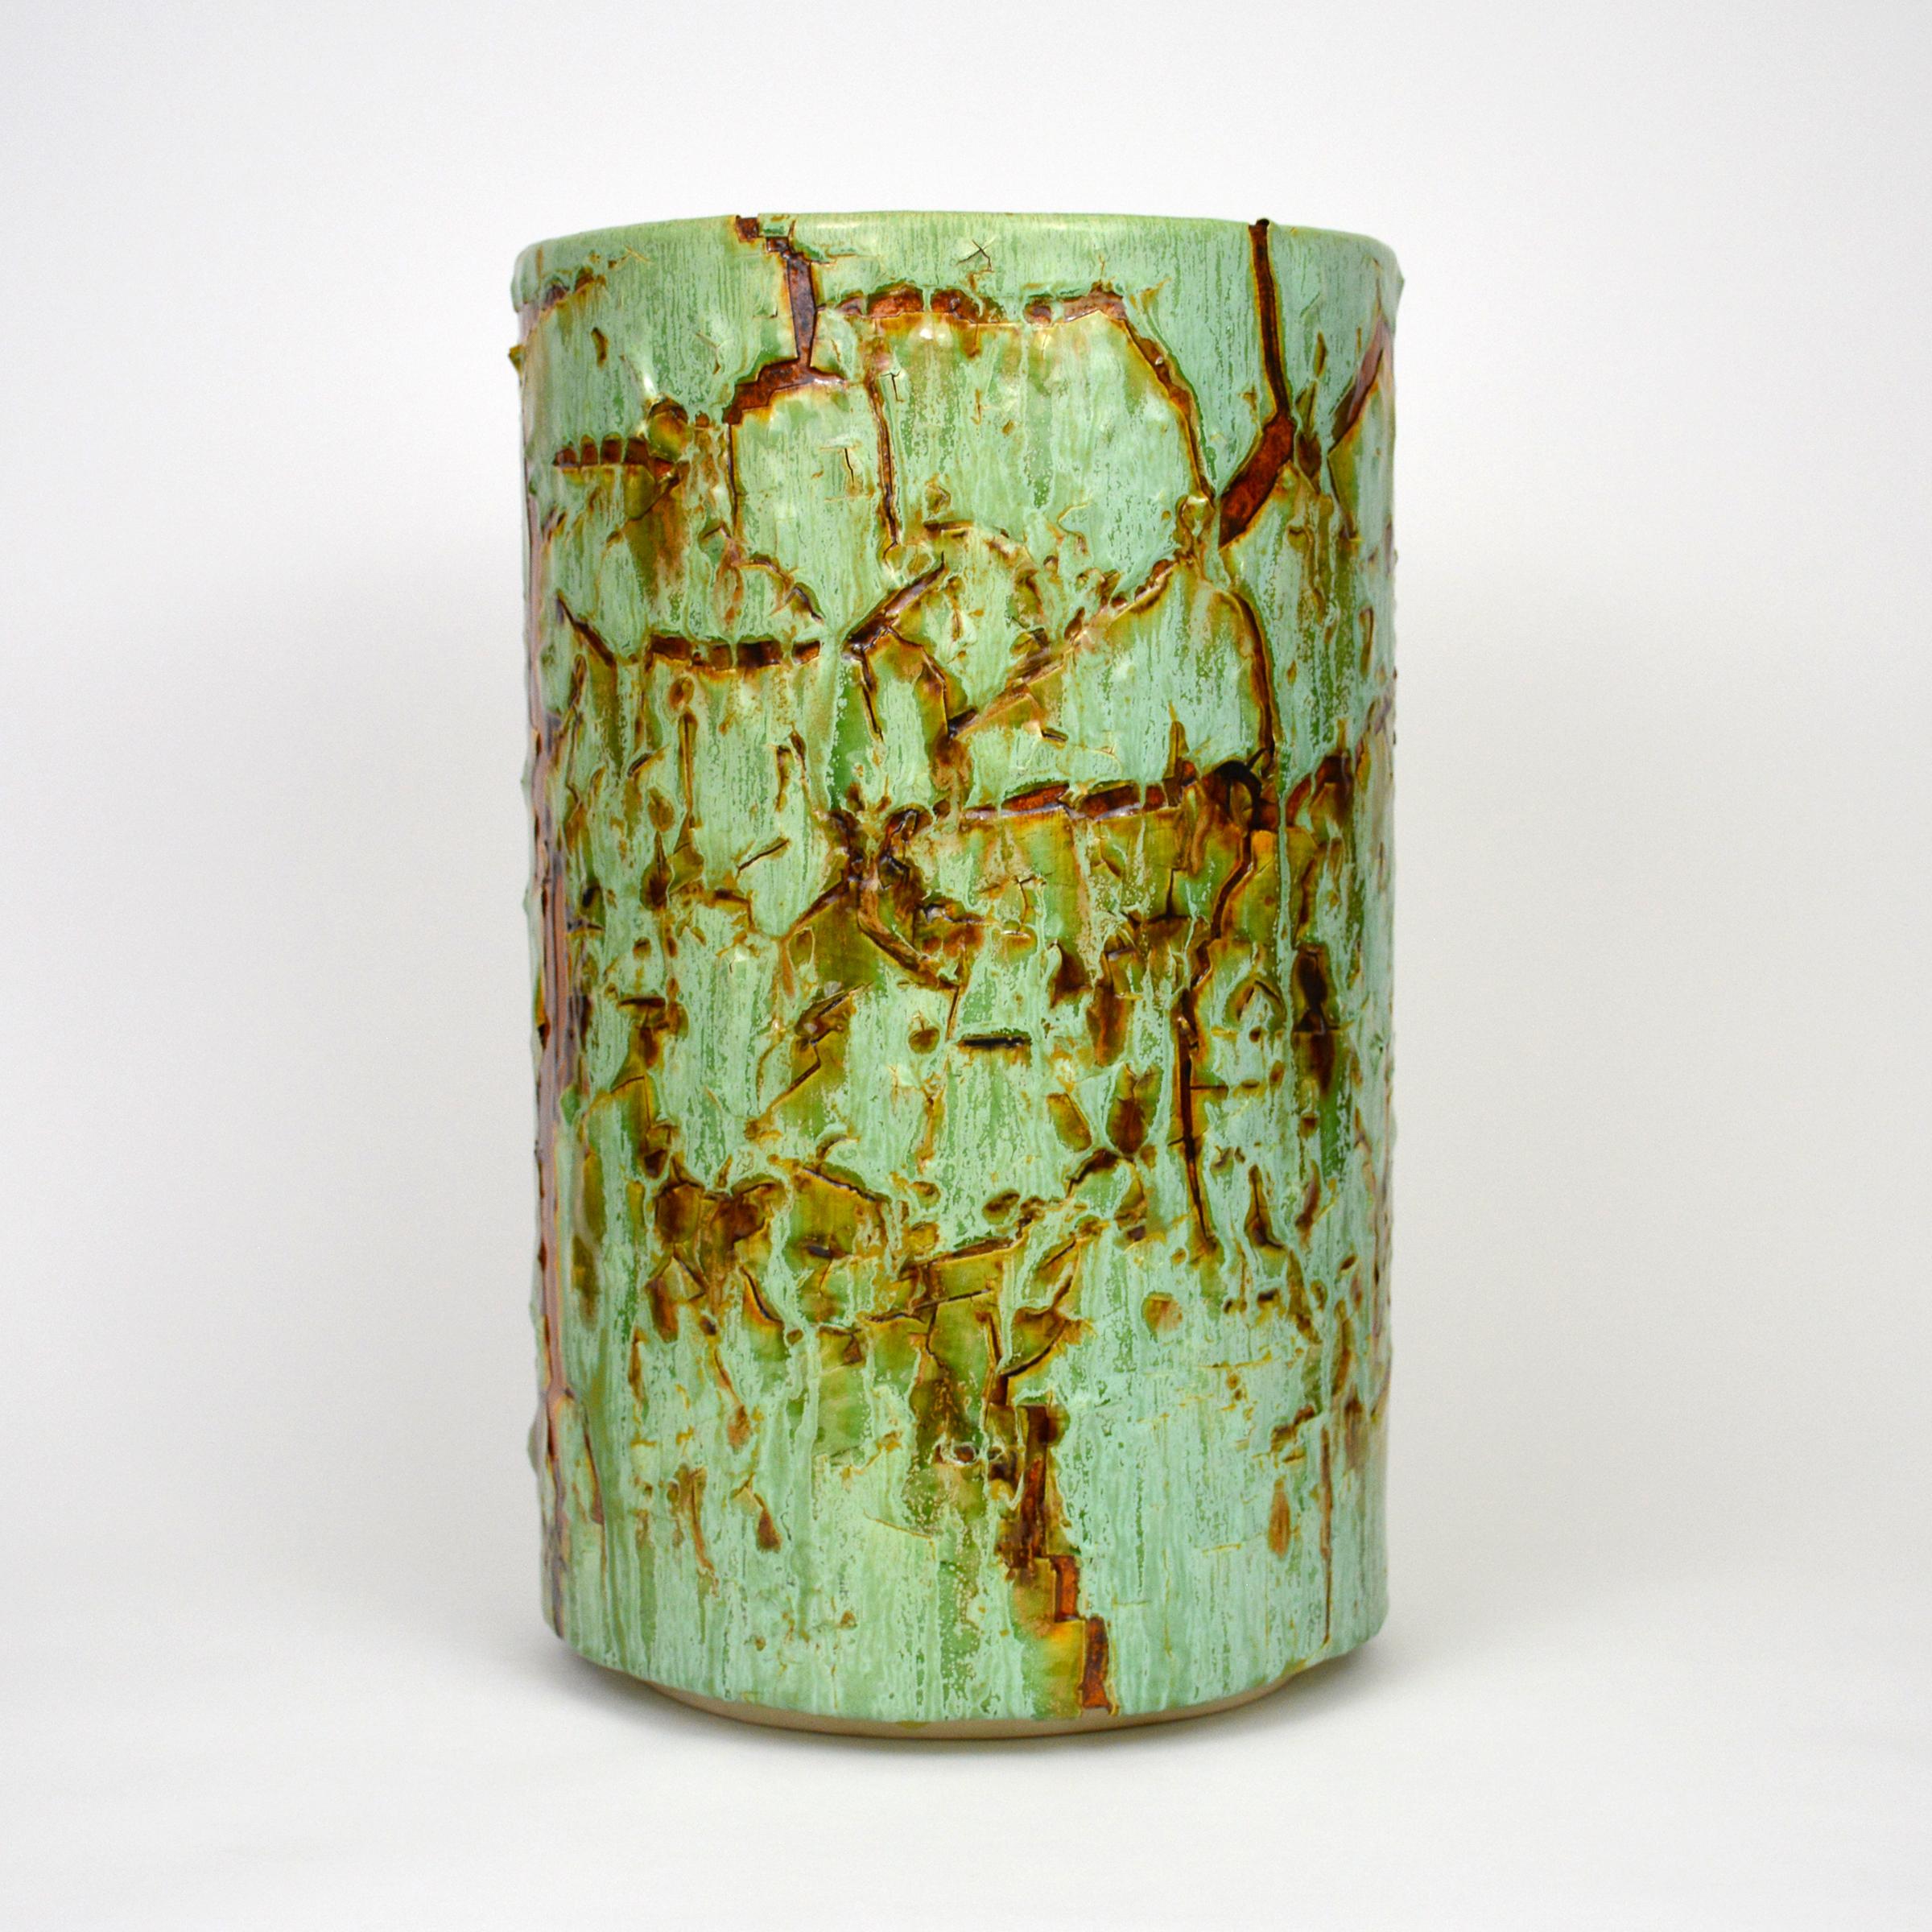 Zylindrische glasierte Keramikskulptur von William Edwards
Handgefertigtes Steingutgefäß, mehrfach gebrannt, um eine strukturierte Oberfläche von zufälliger Abstraktion zu erhalten, in Grüntönen mit bernsteinfarbener Glanzglasur, die